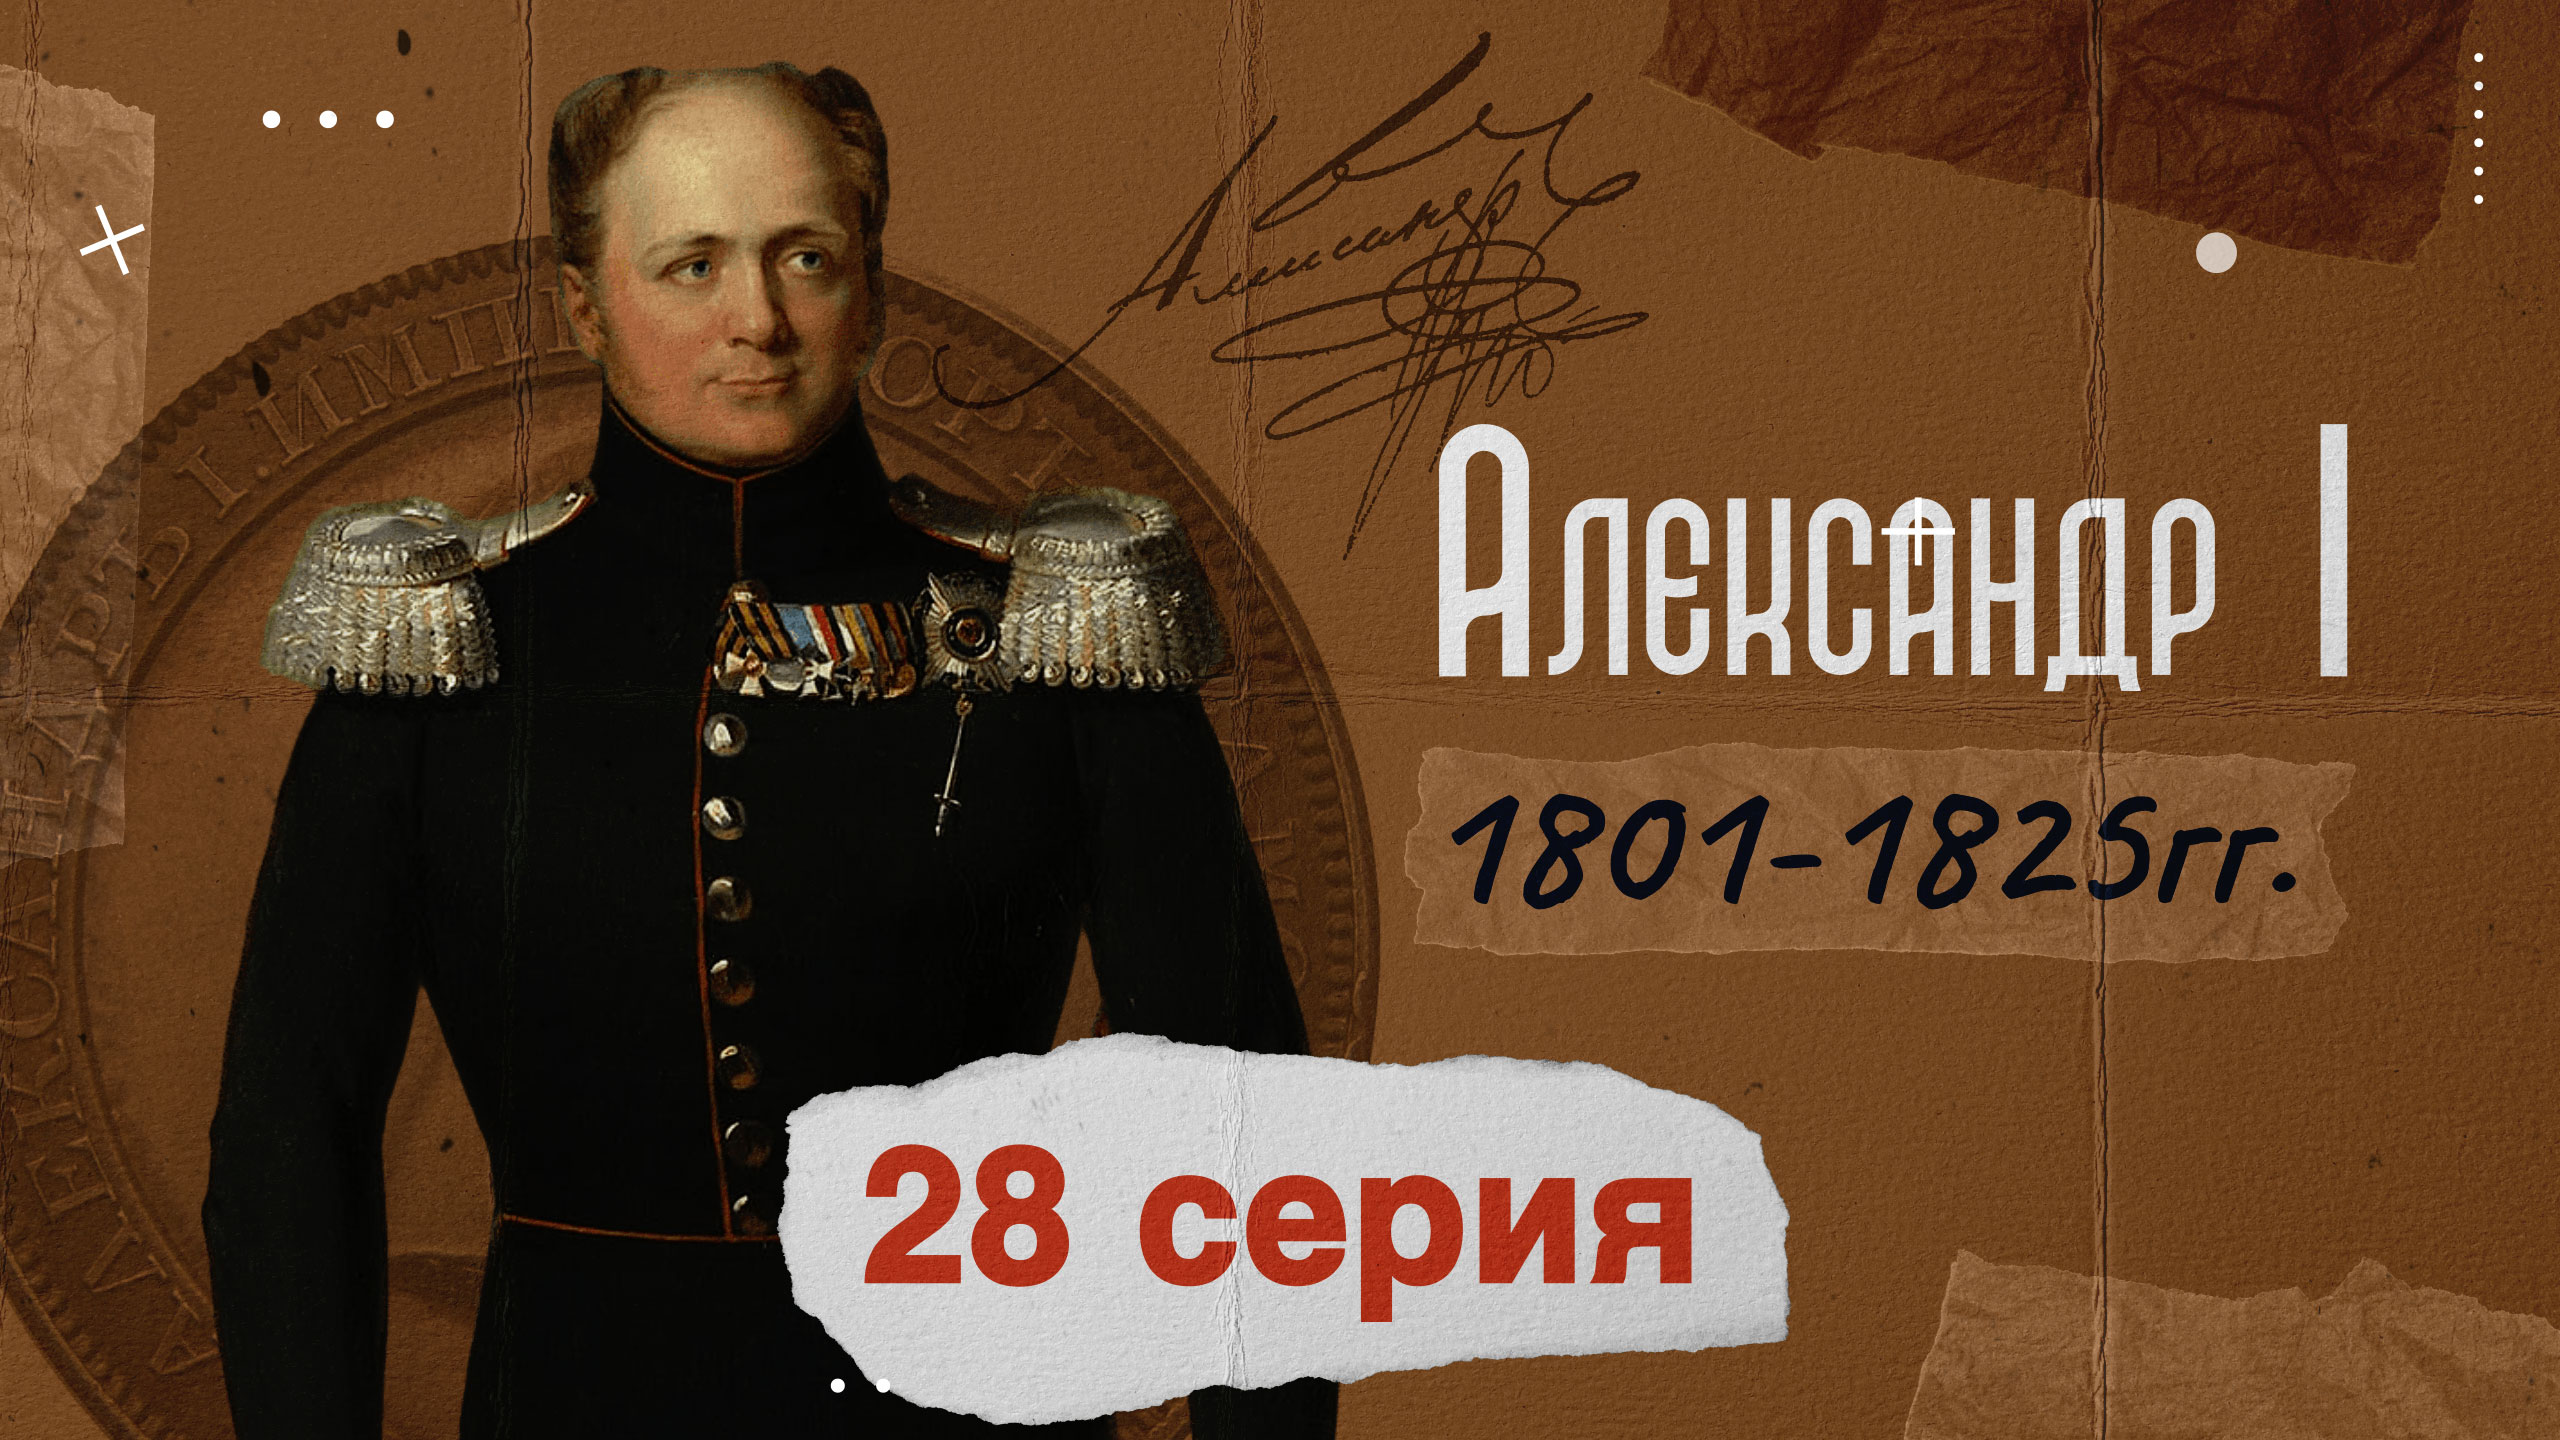 Царь Александр Первый - 1801-1825г. История России